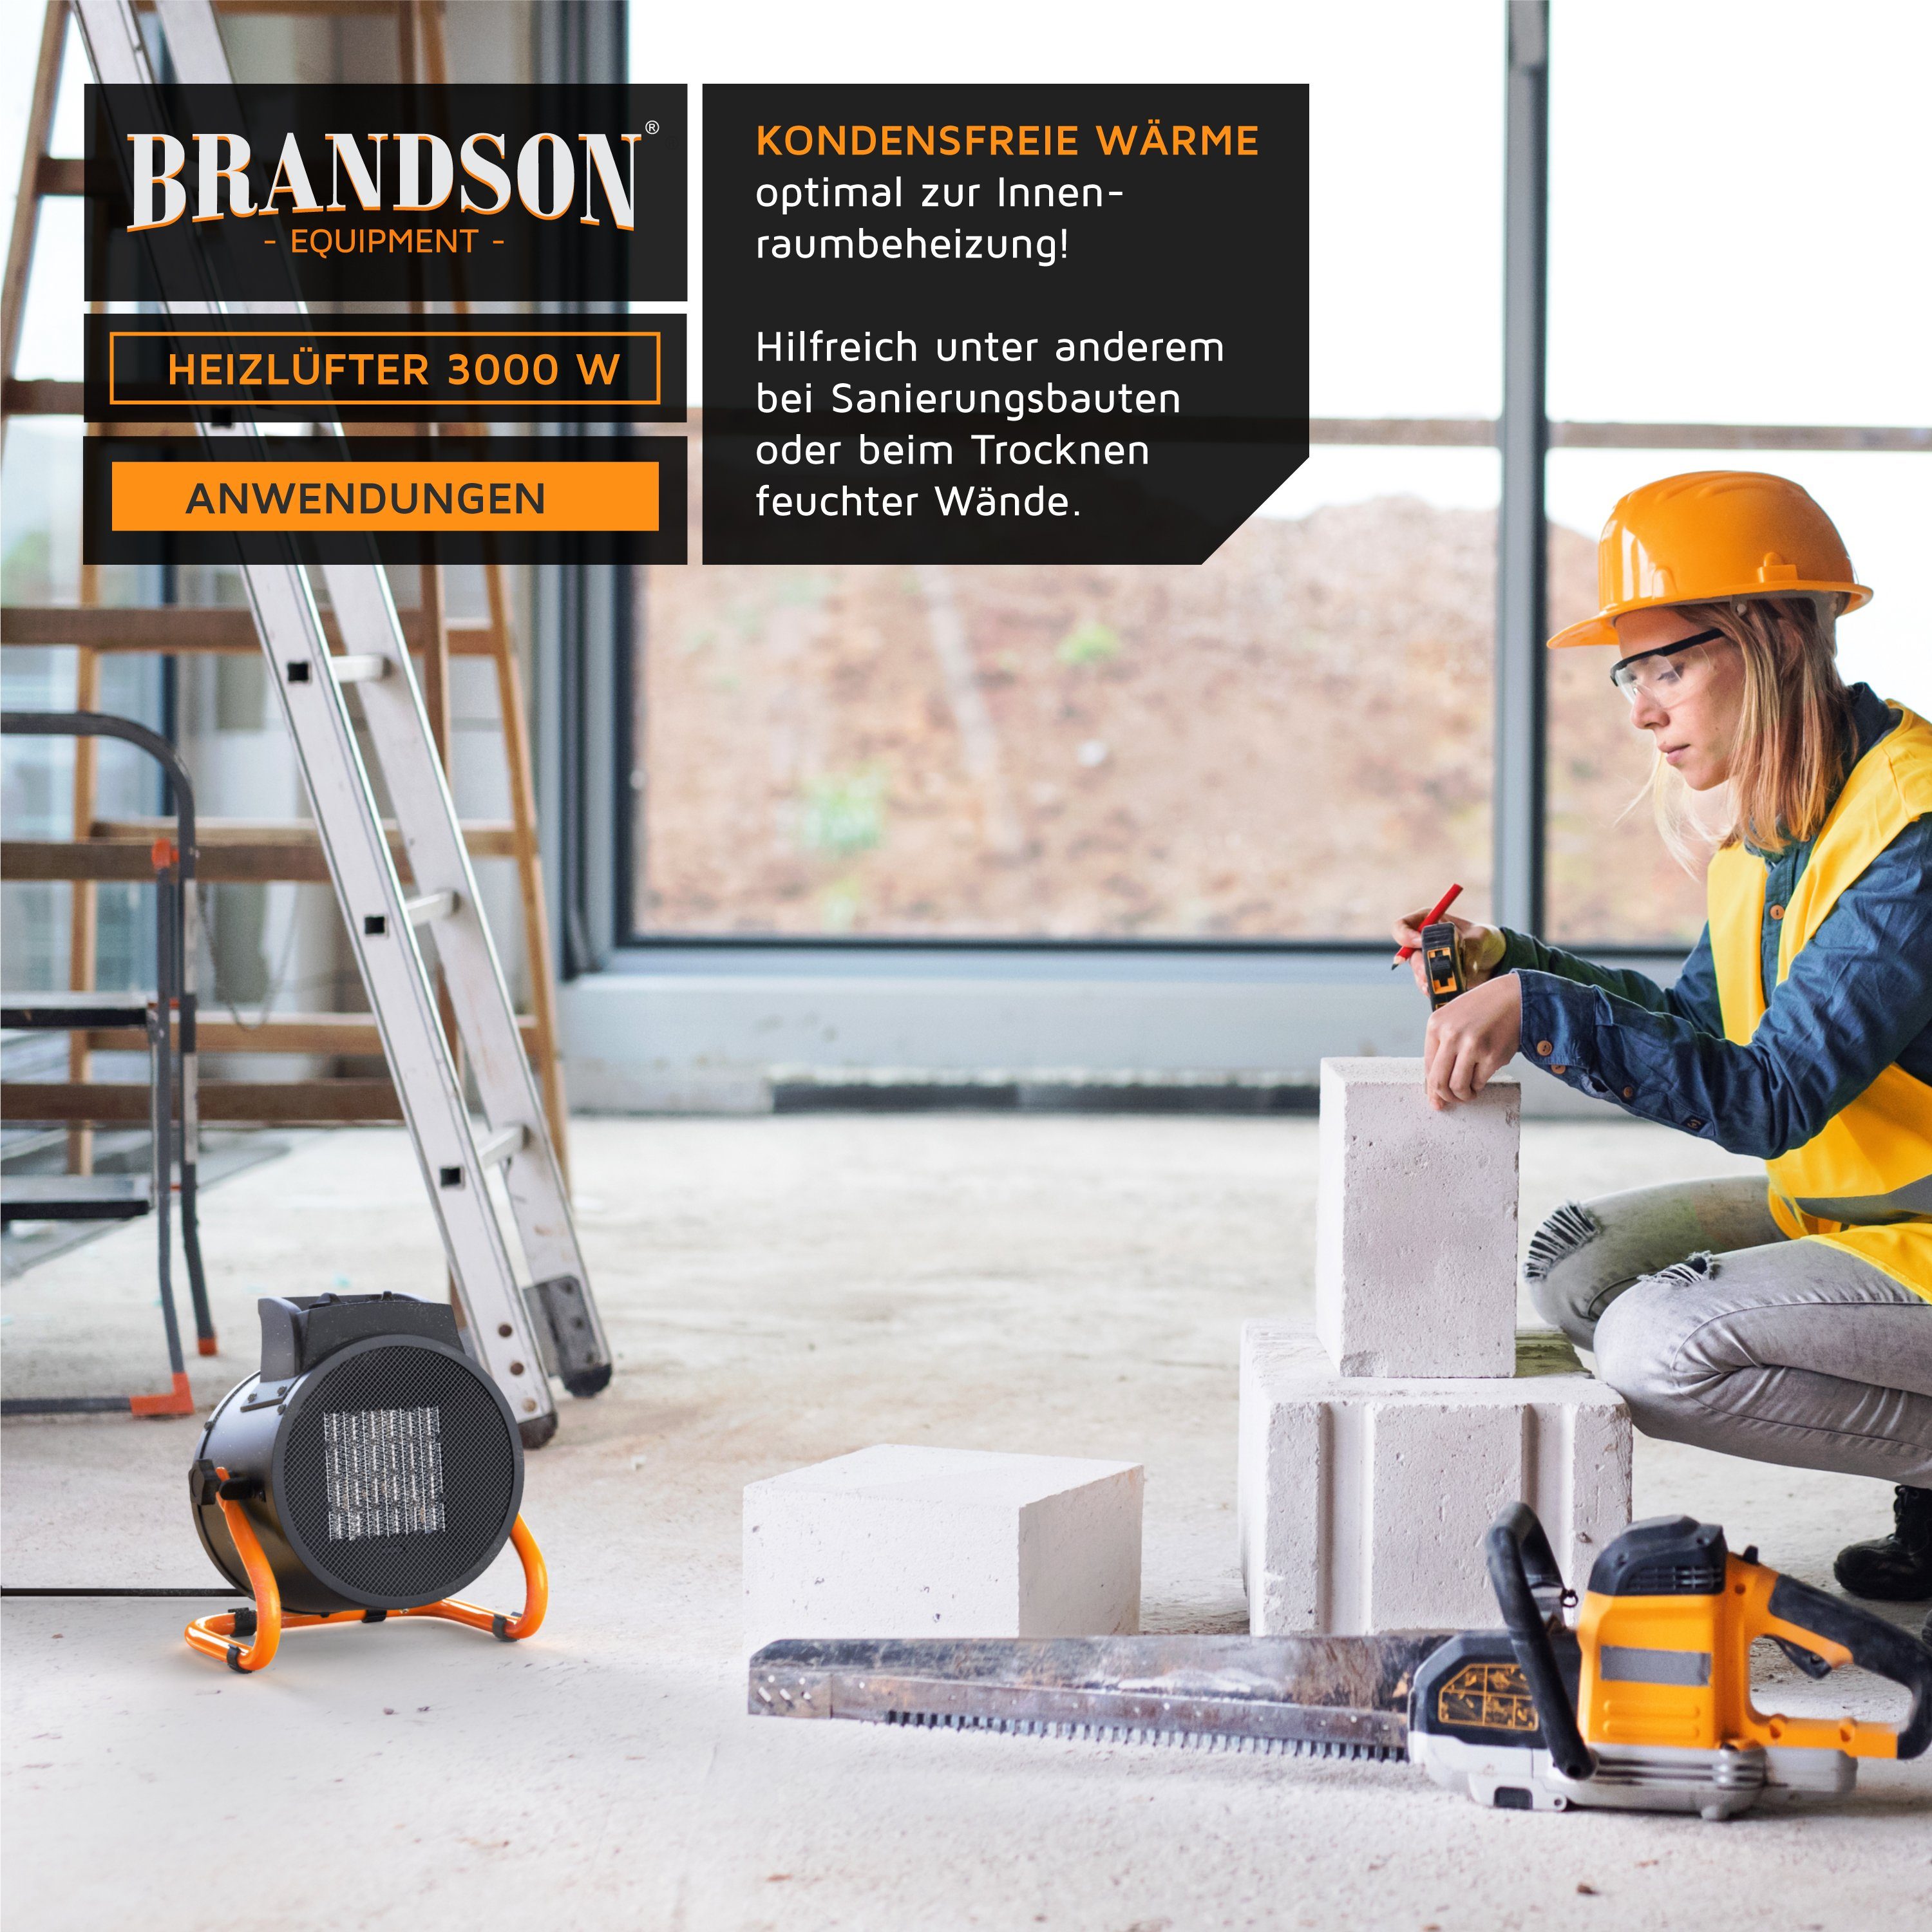 Brandson W, 3000 Keramikheizlüfter, 3 kW Heizgebläse Baustellen / Heizlüfter - Elektroheizgebläse Keramik schwarz/orange